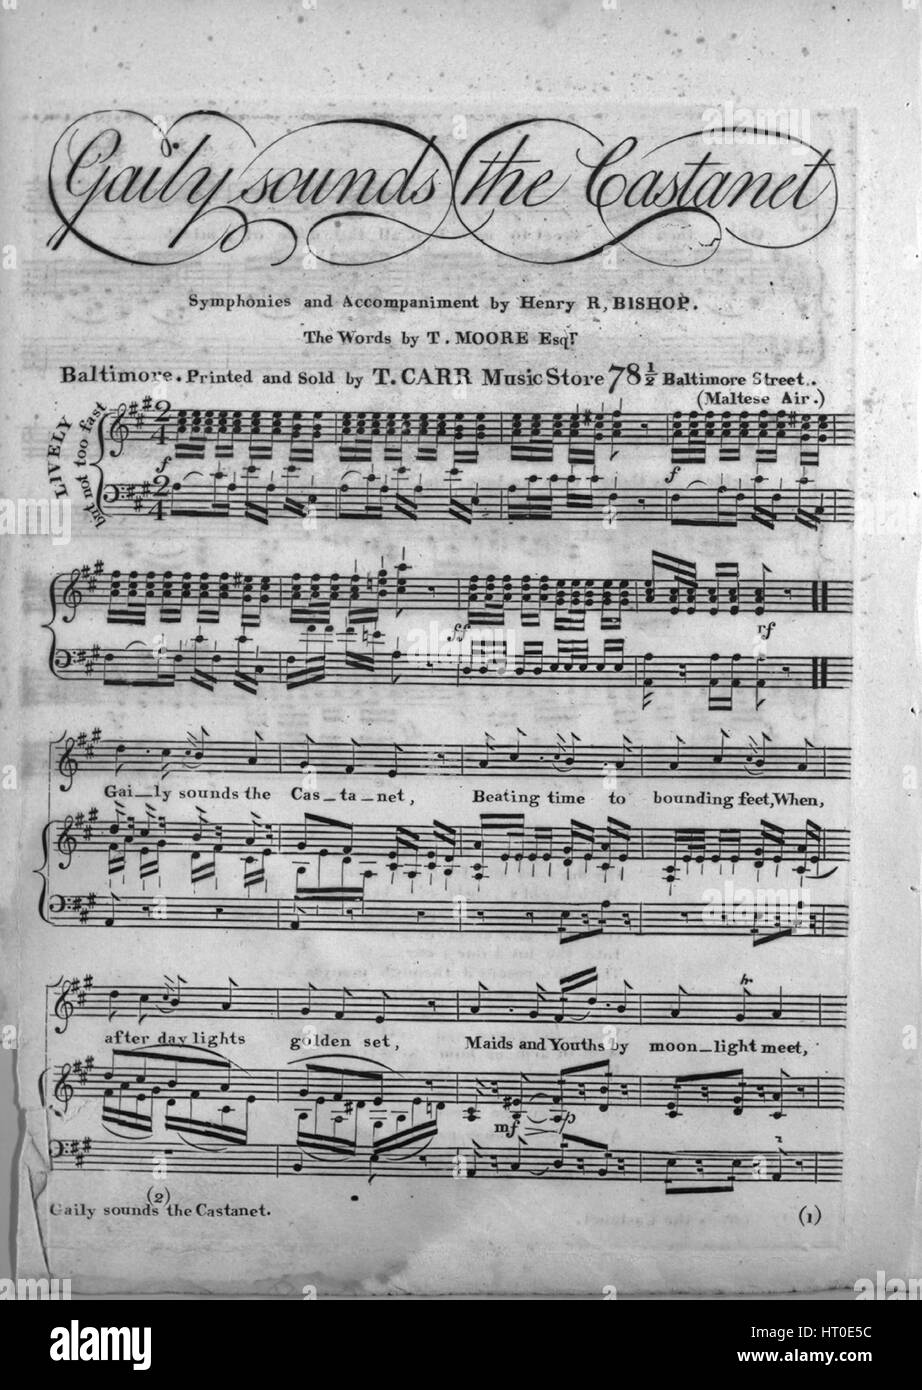 Sheet Music image de couverture de la chanson 'gaiement son la Castanet',  avec une œuvre originale lecture notes 'Symphonies et accompagnement par  les mots de l'Évêque Henry R par T Moore, Esqr ; (